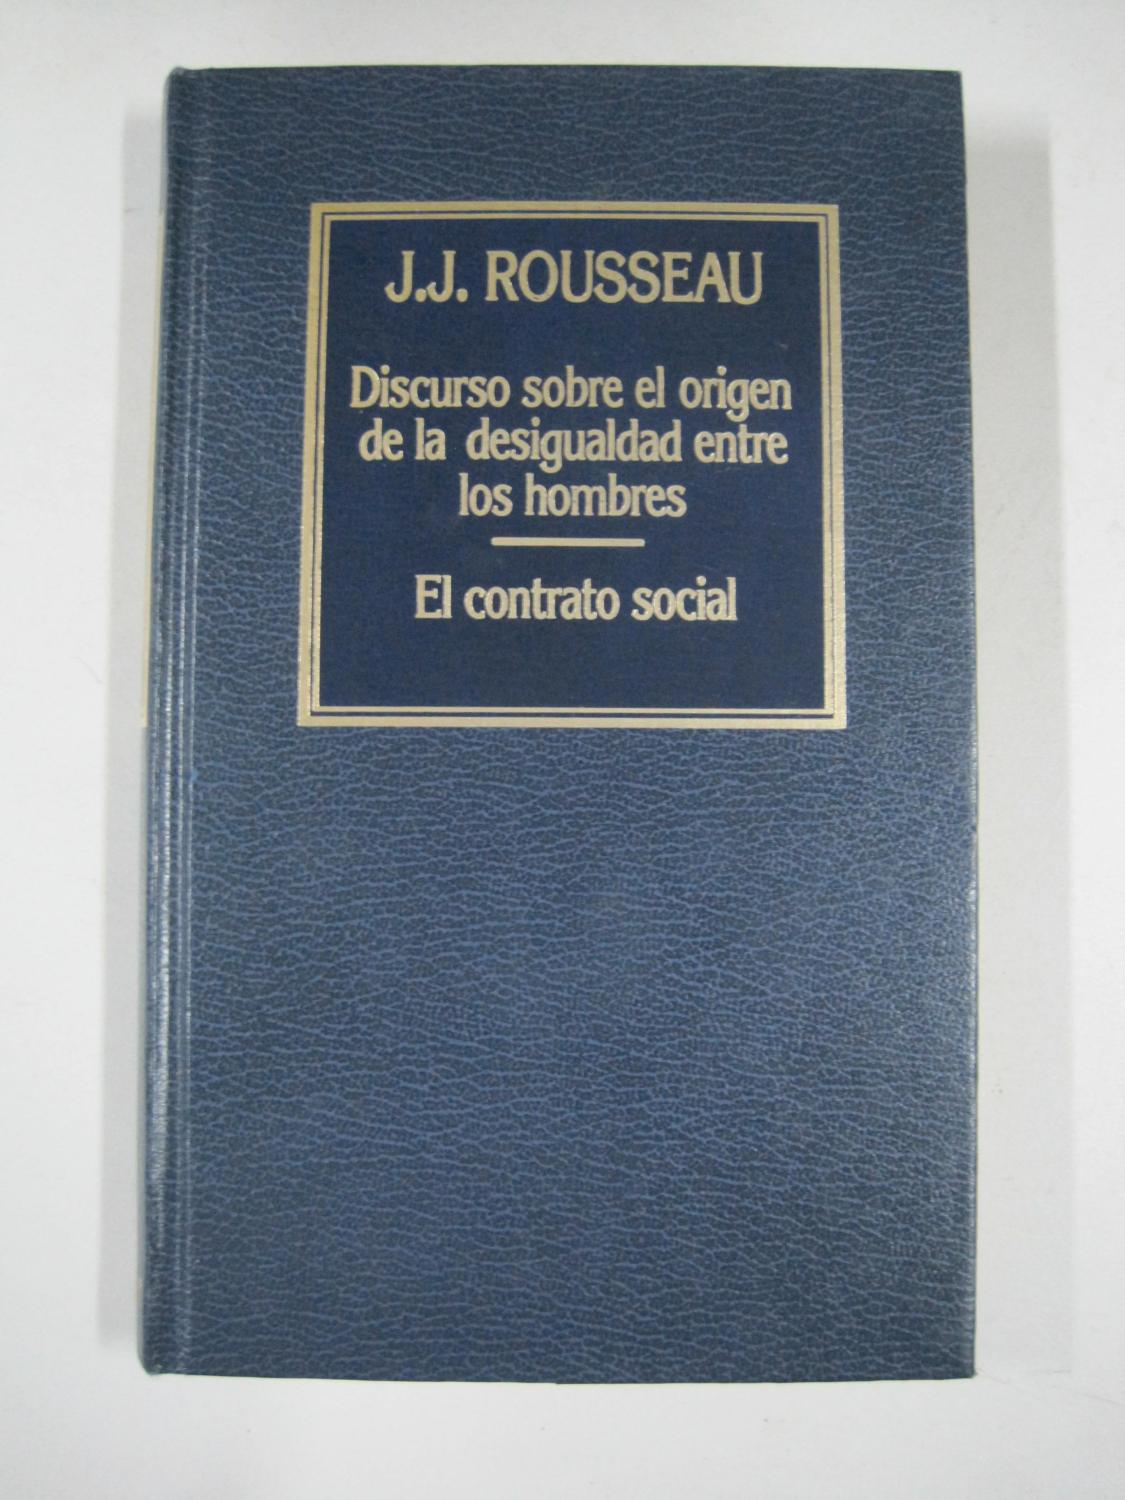 Discurso sobre el origen de la desigualdad entre los hombres, el contrato social - J.J. Rousseau